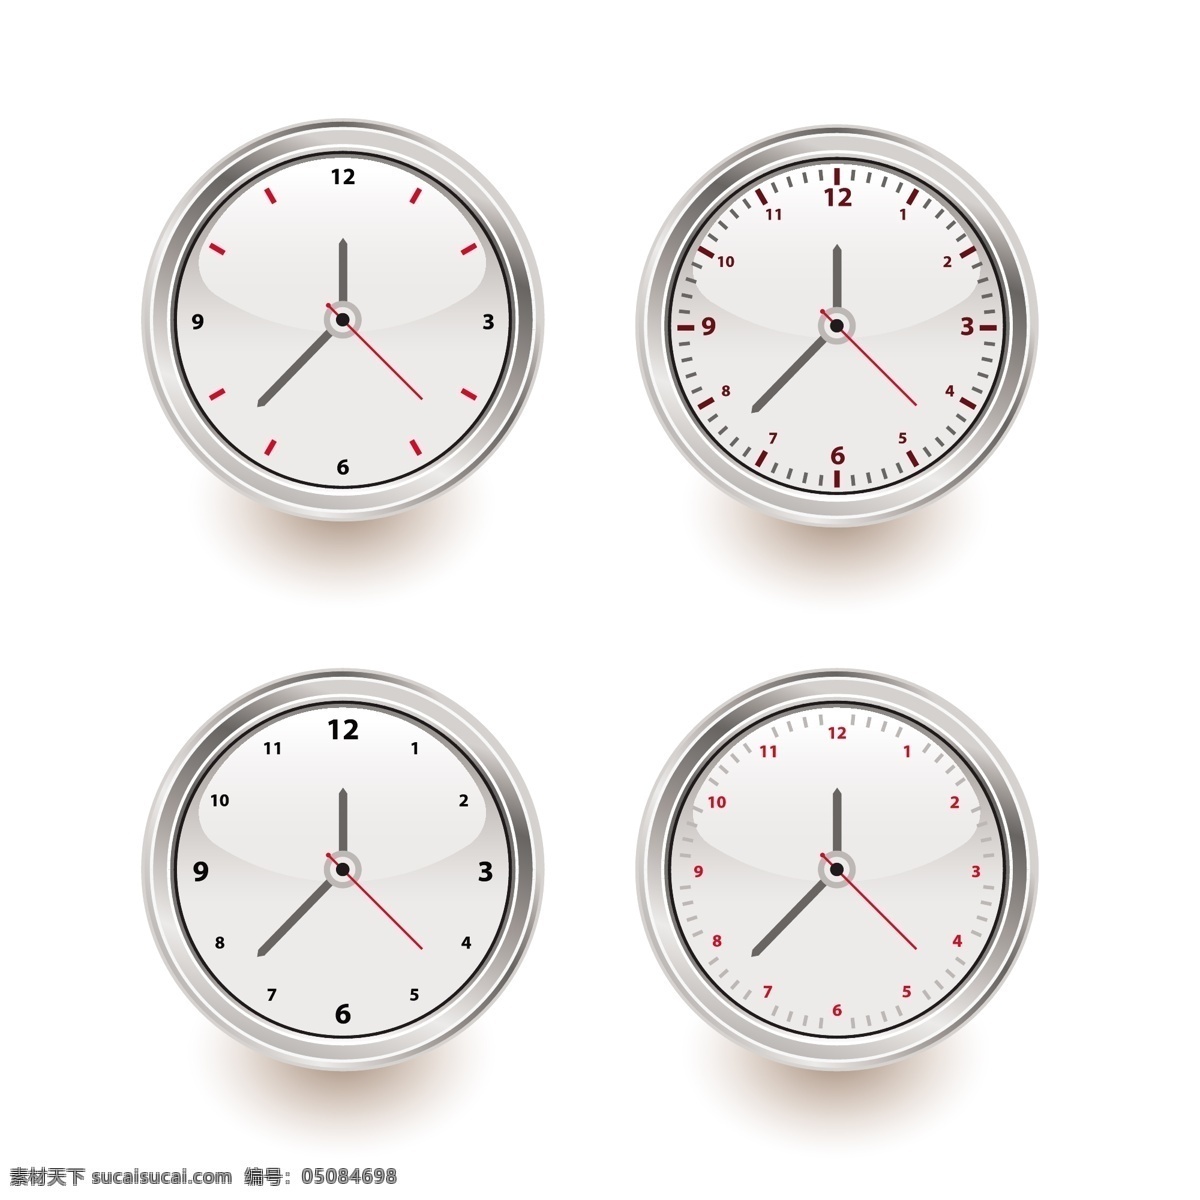 设置 时钟 钟表 设置时钟 图标设置时钟 向量 集 人工智能 矢量 图标 向量组的时钟 设置时钟向量 将墙上的钟表 钟表的隔离套 其他矢量图